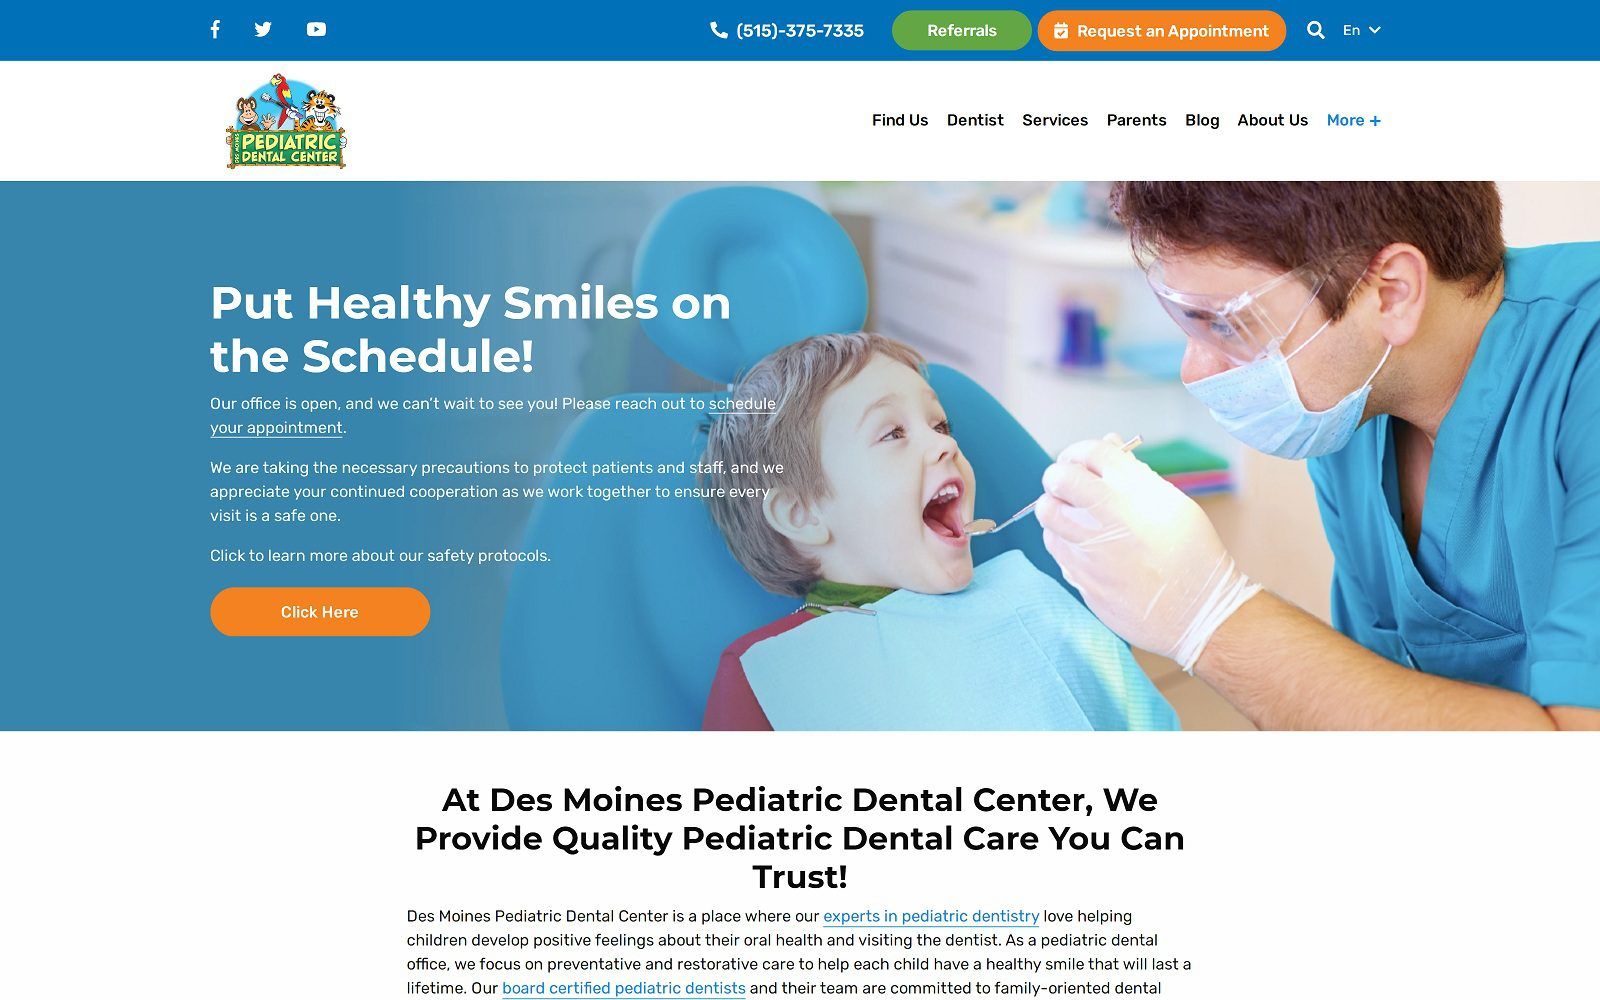 The screenshot of des moines pediatric dental center iowapediatricdentalcenter. Com website